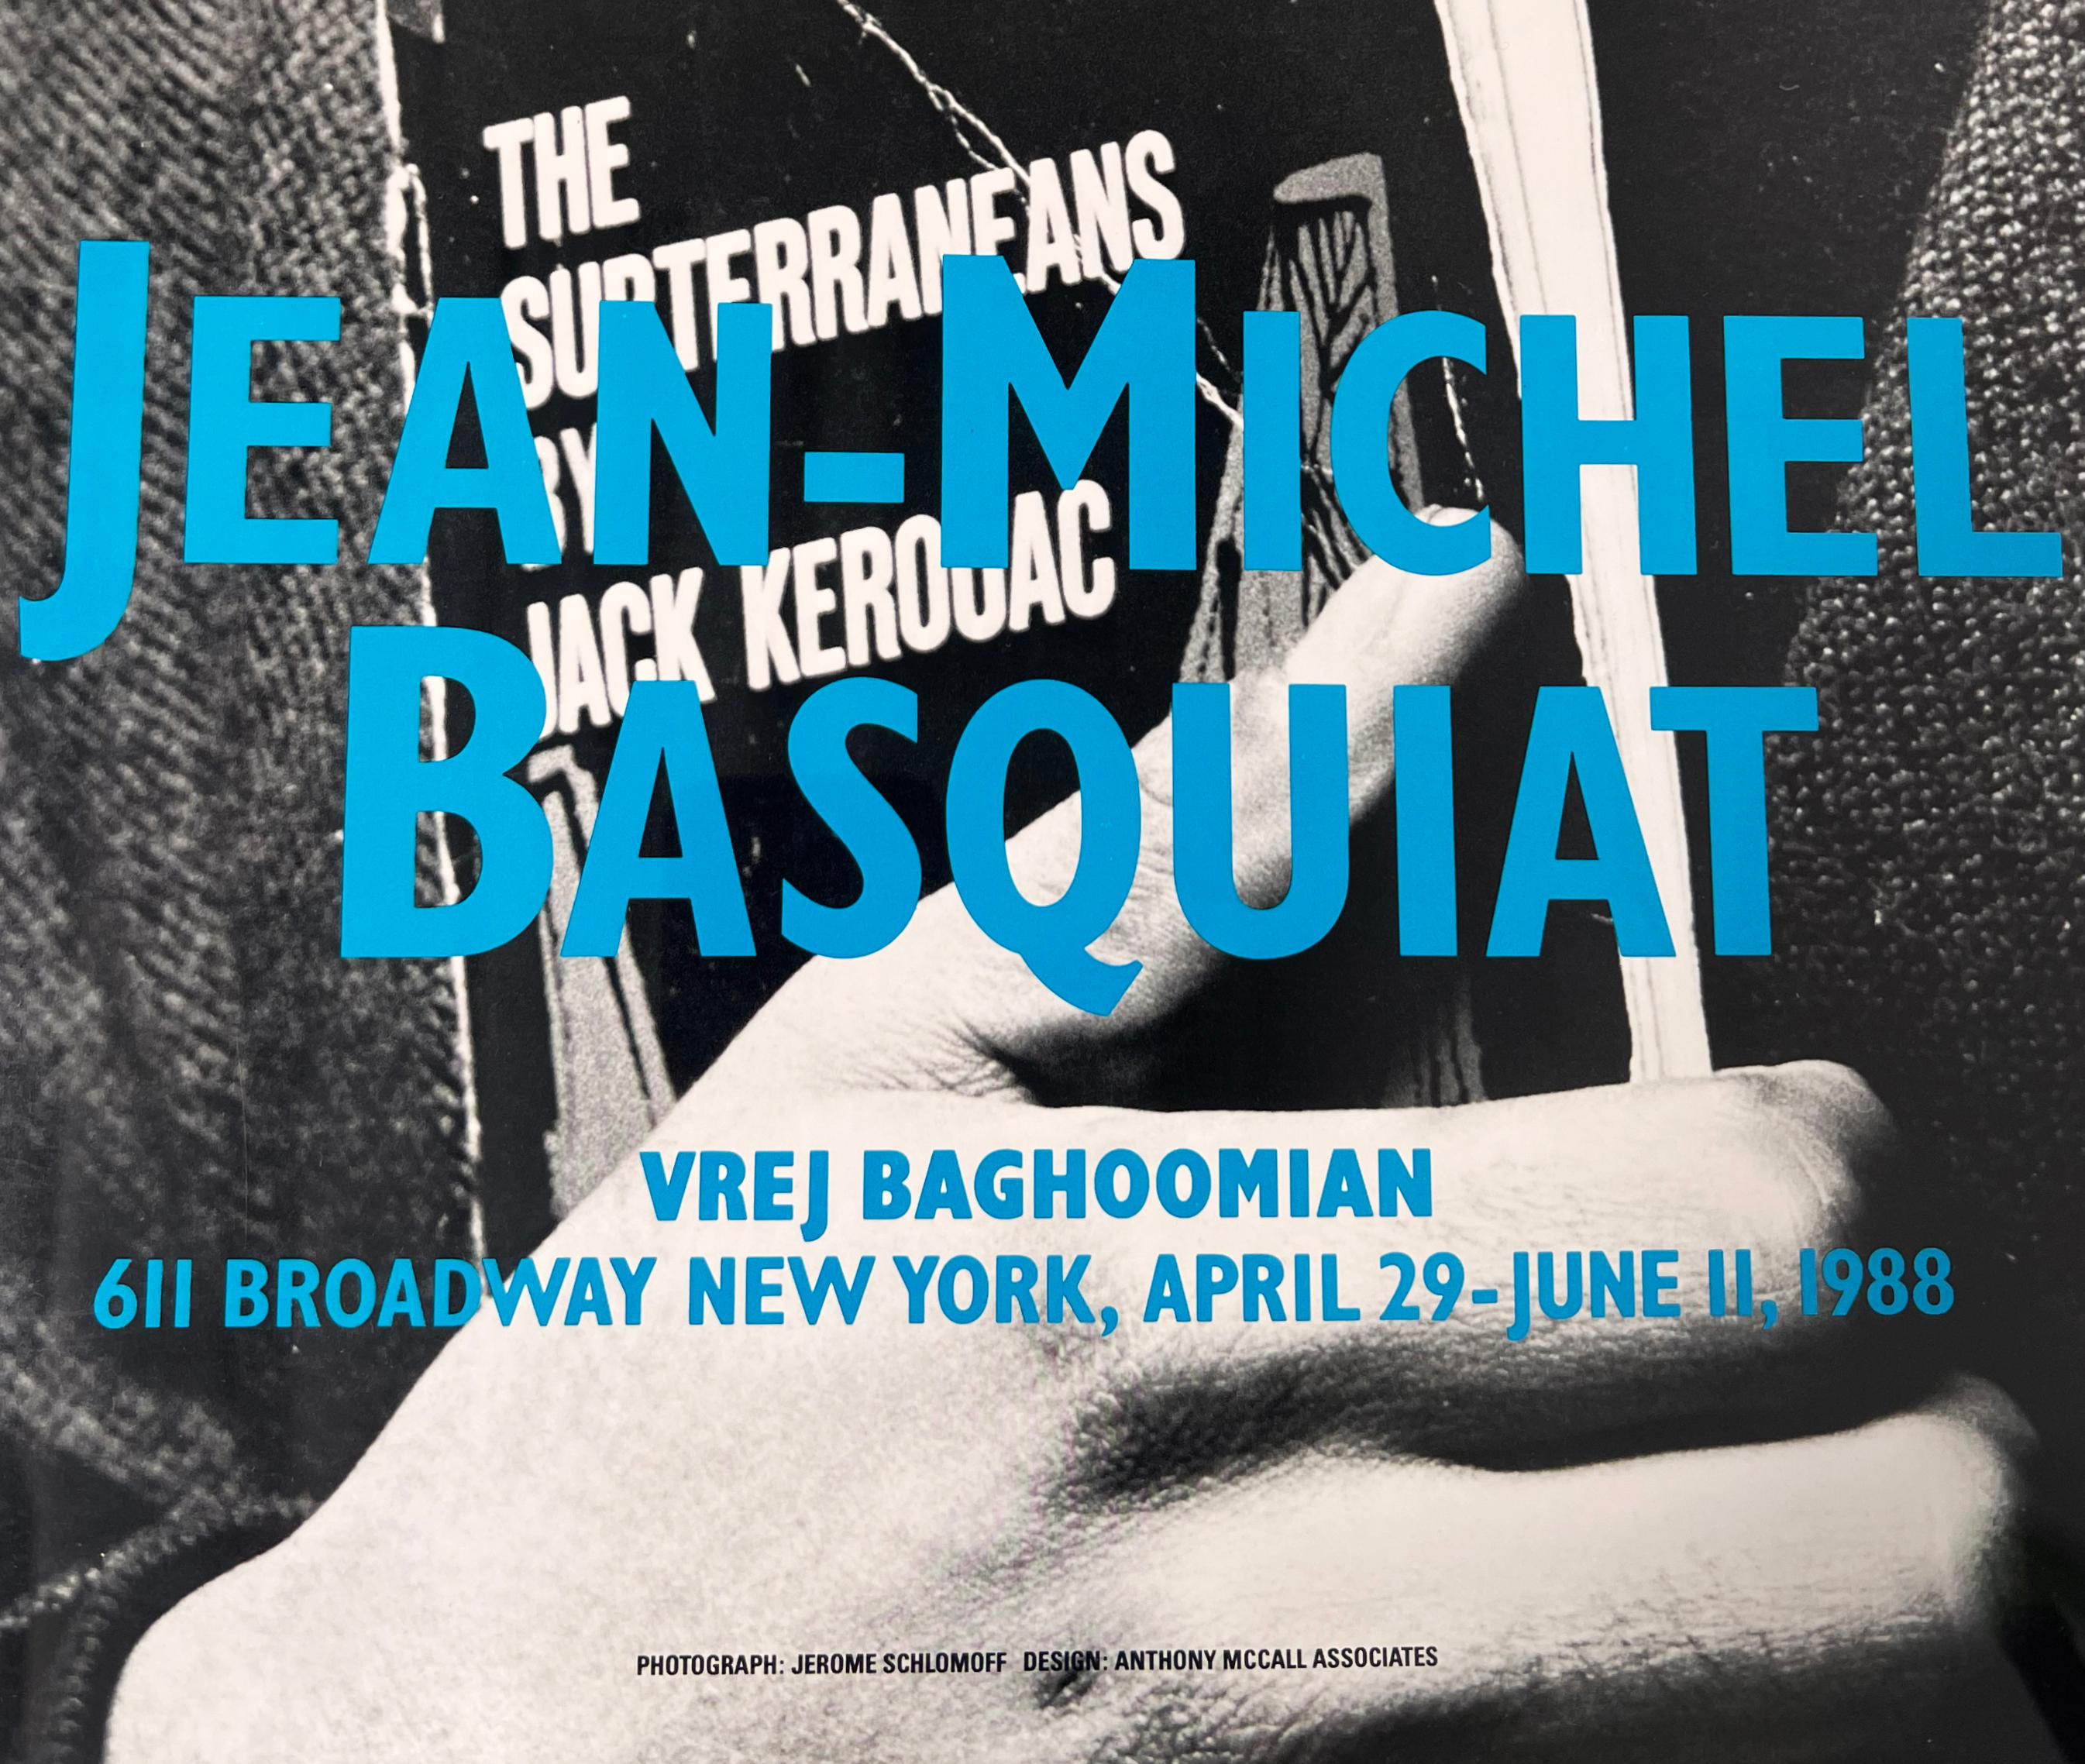 1980er Jahre Jean-Michel Basquiat Ausstellungsplakat: Basquiat in der Vrej Baghoomian Gallery, New York: April - Juni 1988:
Die Ausstellung von Jean-Michel Basquiat bei Vrej Baghoomian sollte die letzte des Künstlers sein, bevor er einige Monate